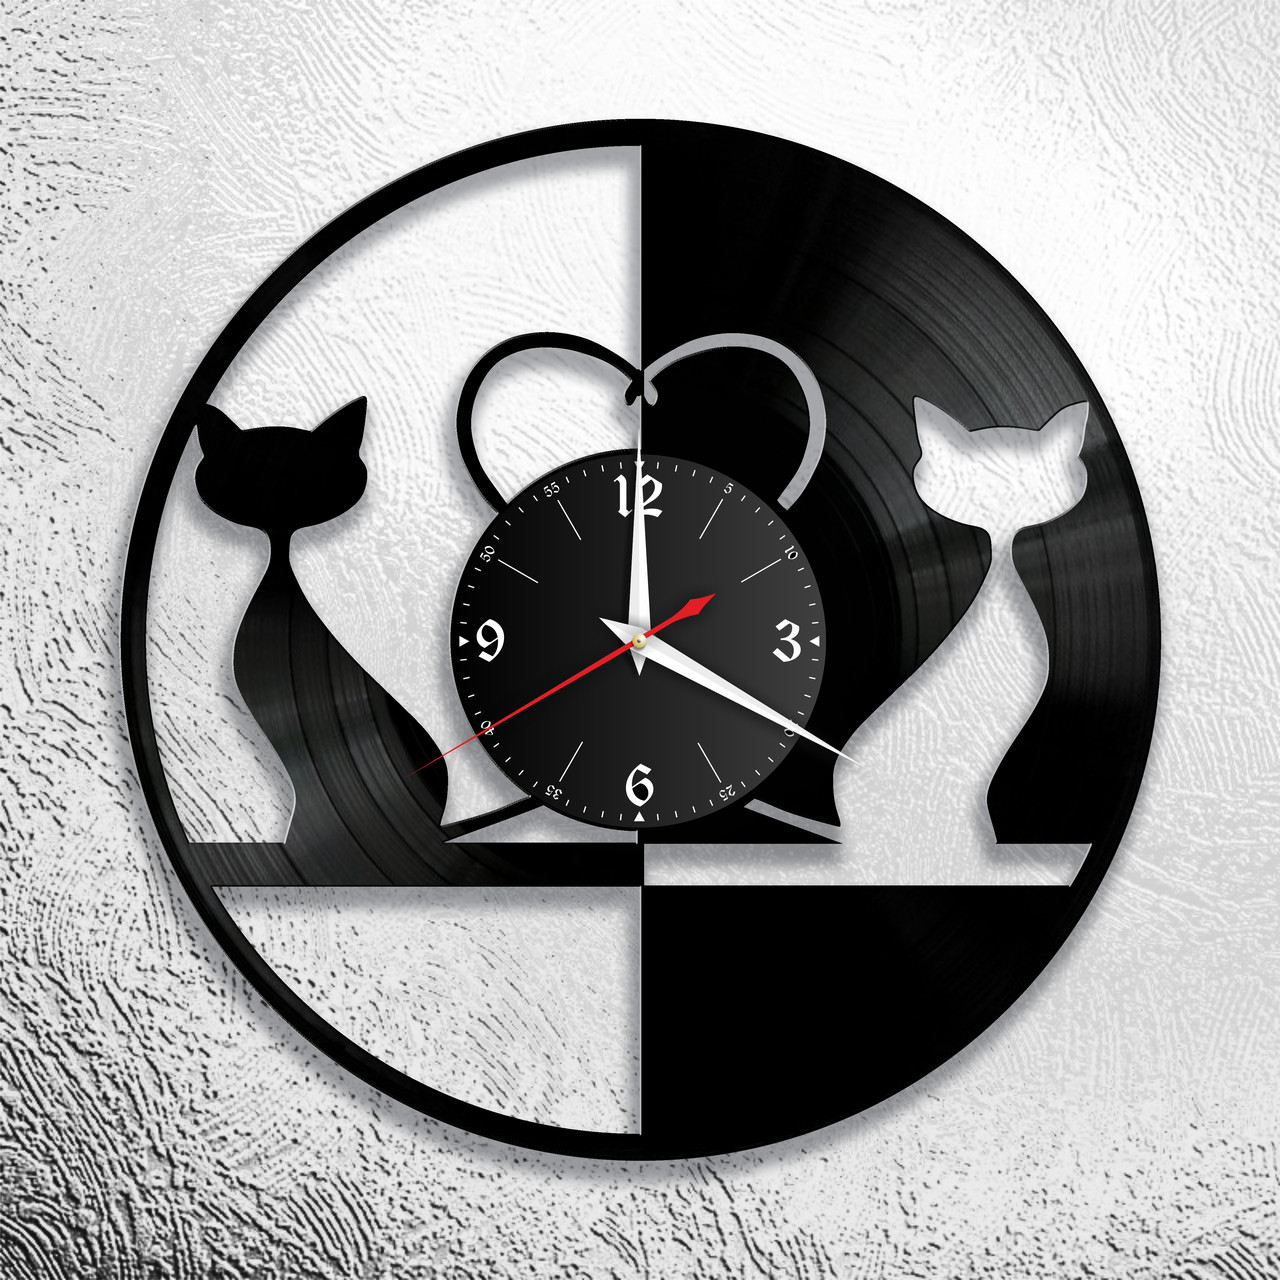 Оригинальные часы из виниловых пластинок "Коты" версия 2, фото 1